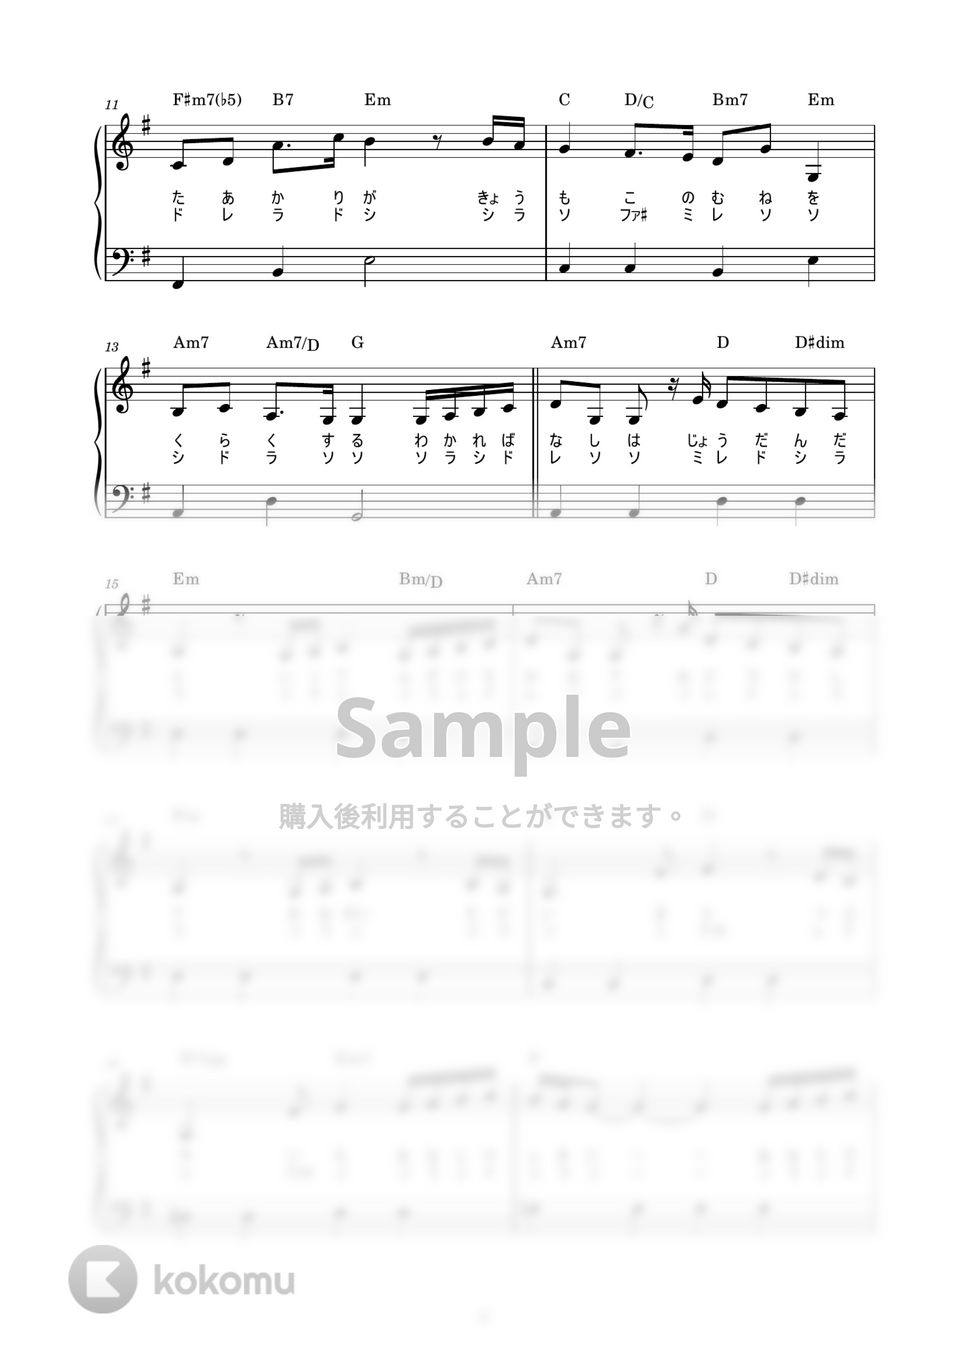 手嶌葵 - ただいま (かんたん / 歌詞付き / ドレミ付き / 初心者) by piano.tokyo